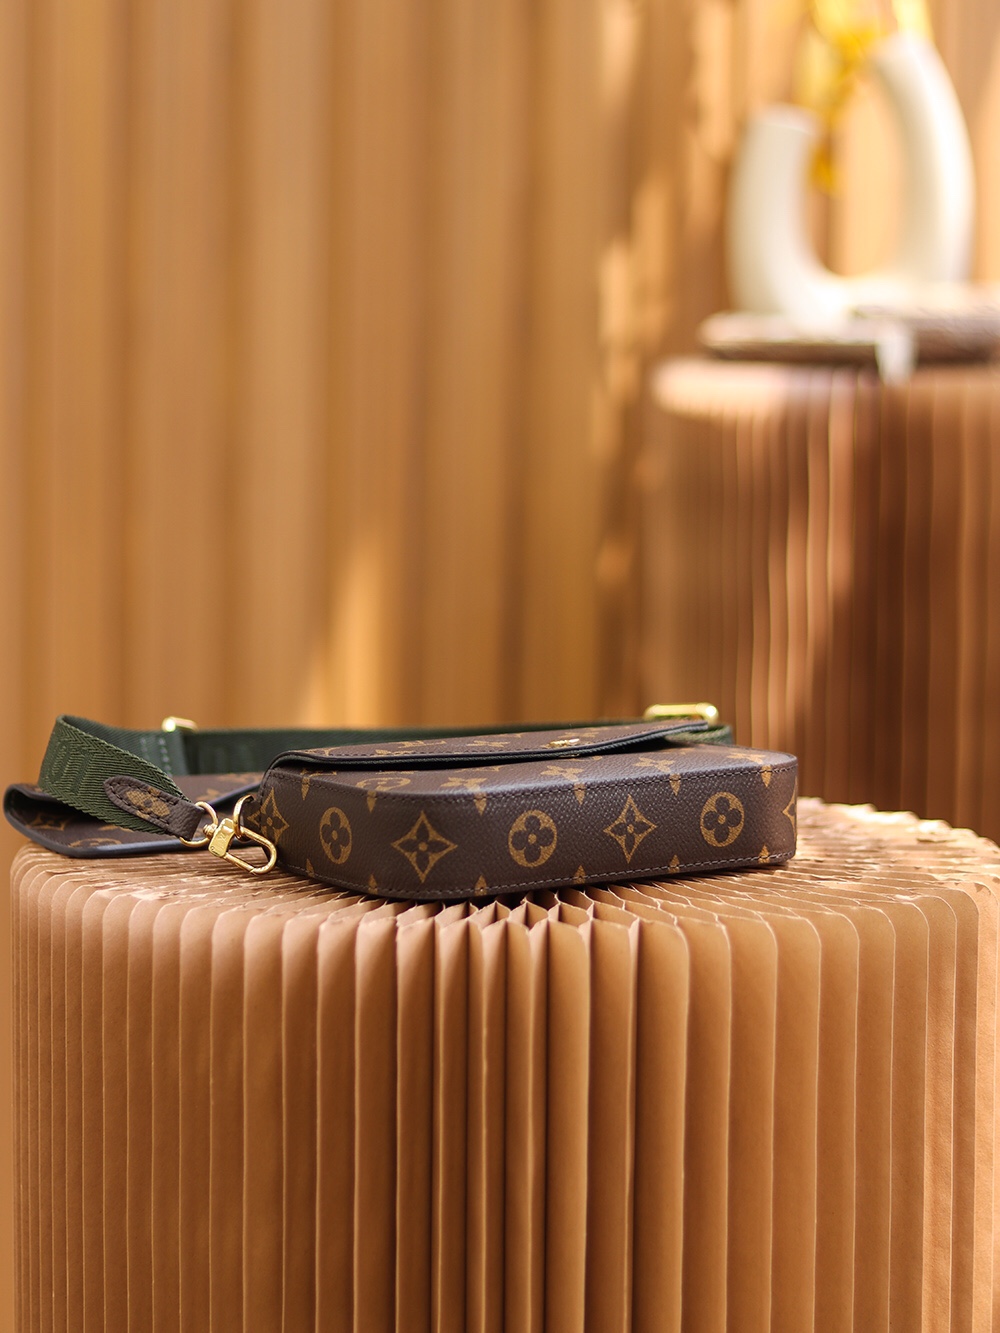 Shop Louis Vuitton Félicie strap & go (M80091) by design◇base